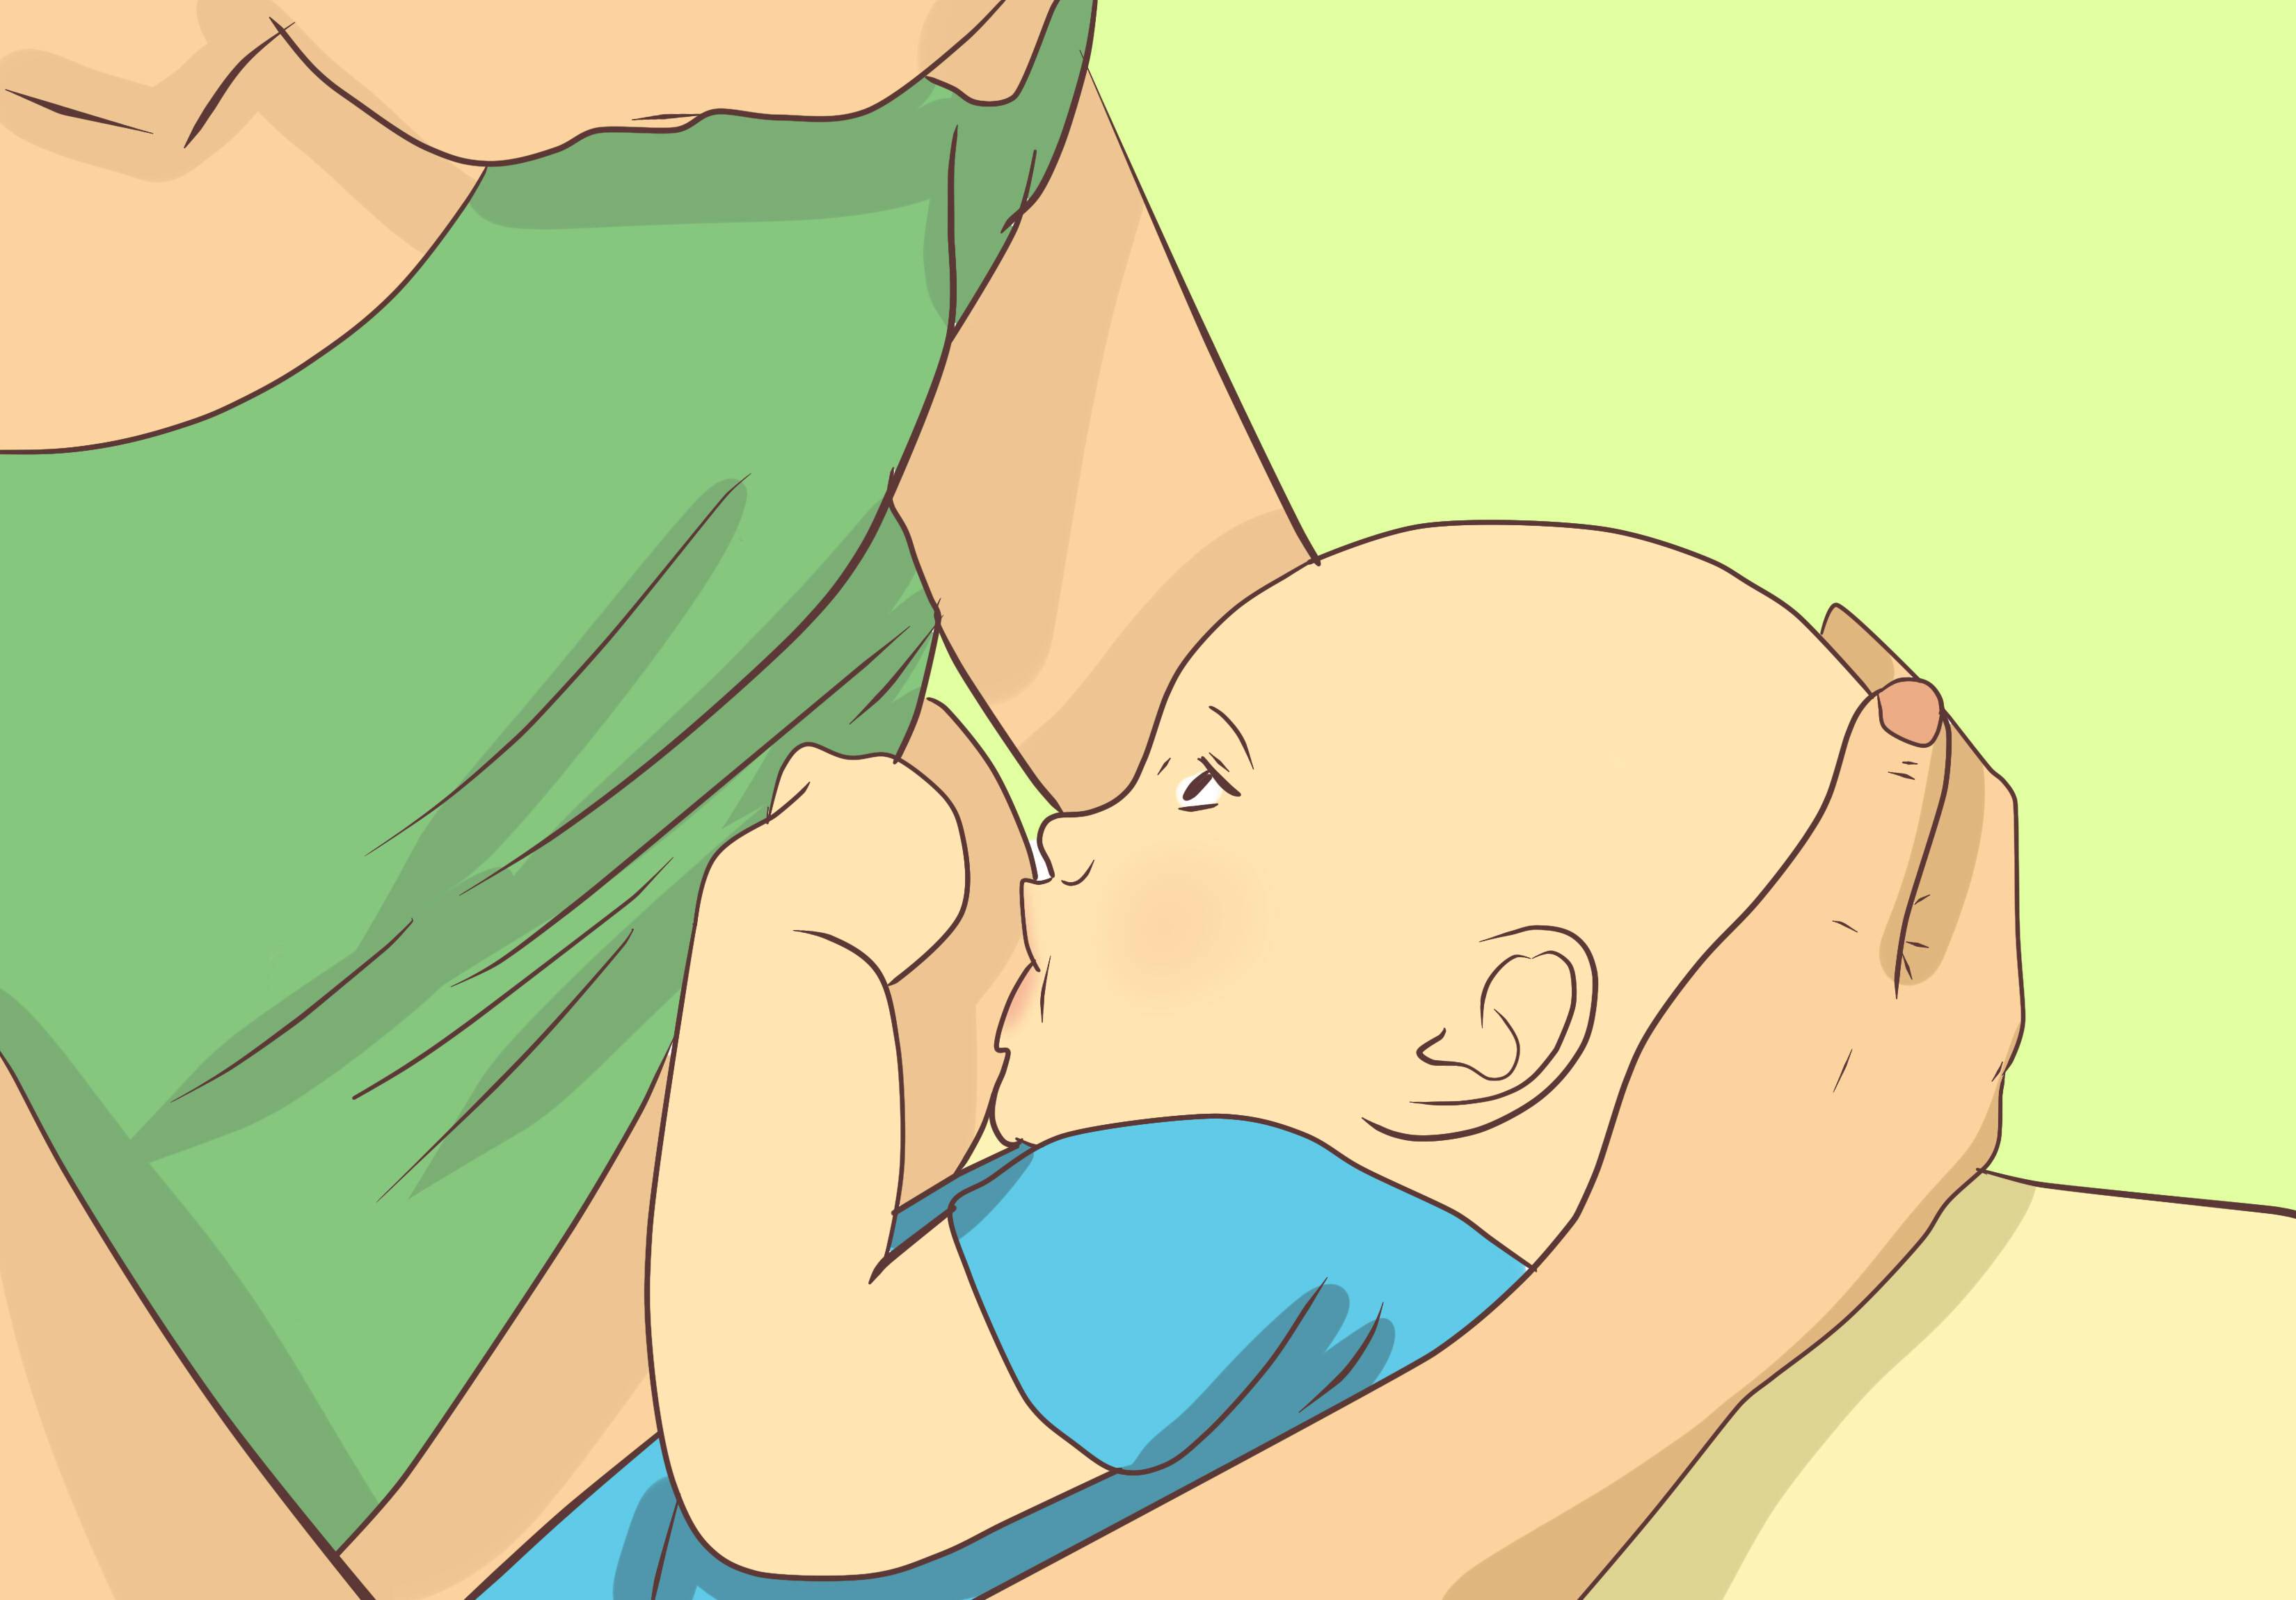 Что нужно знать молодой маме о грудном вскармливании